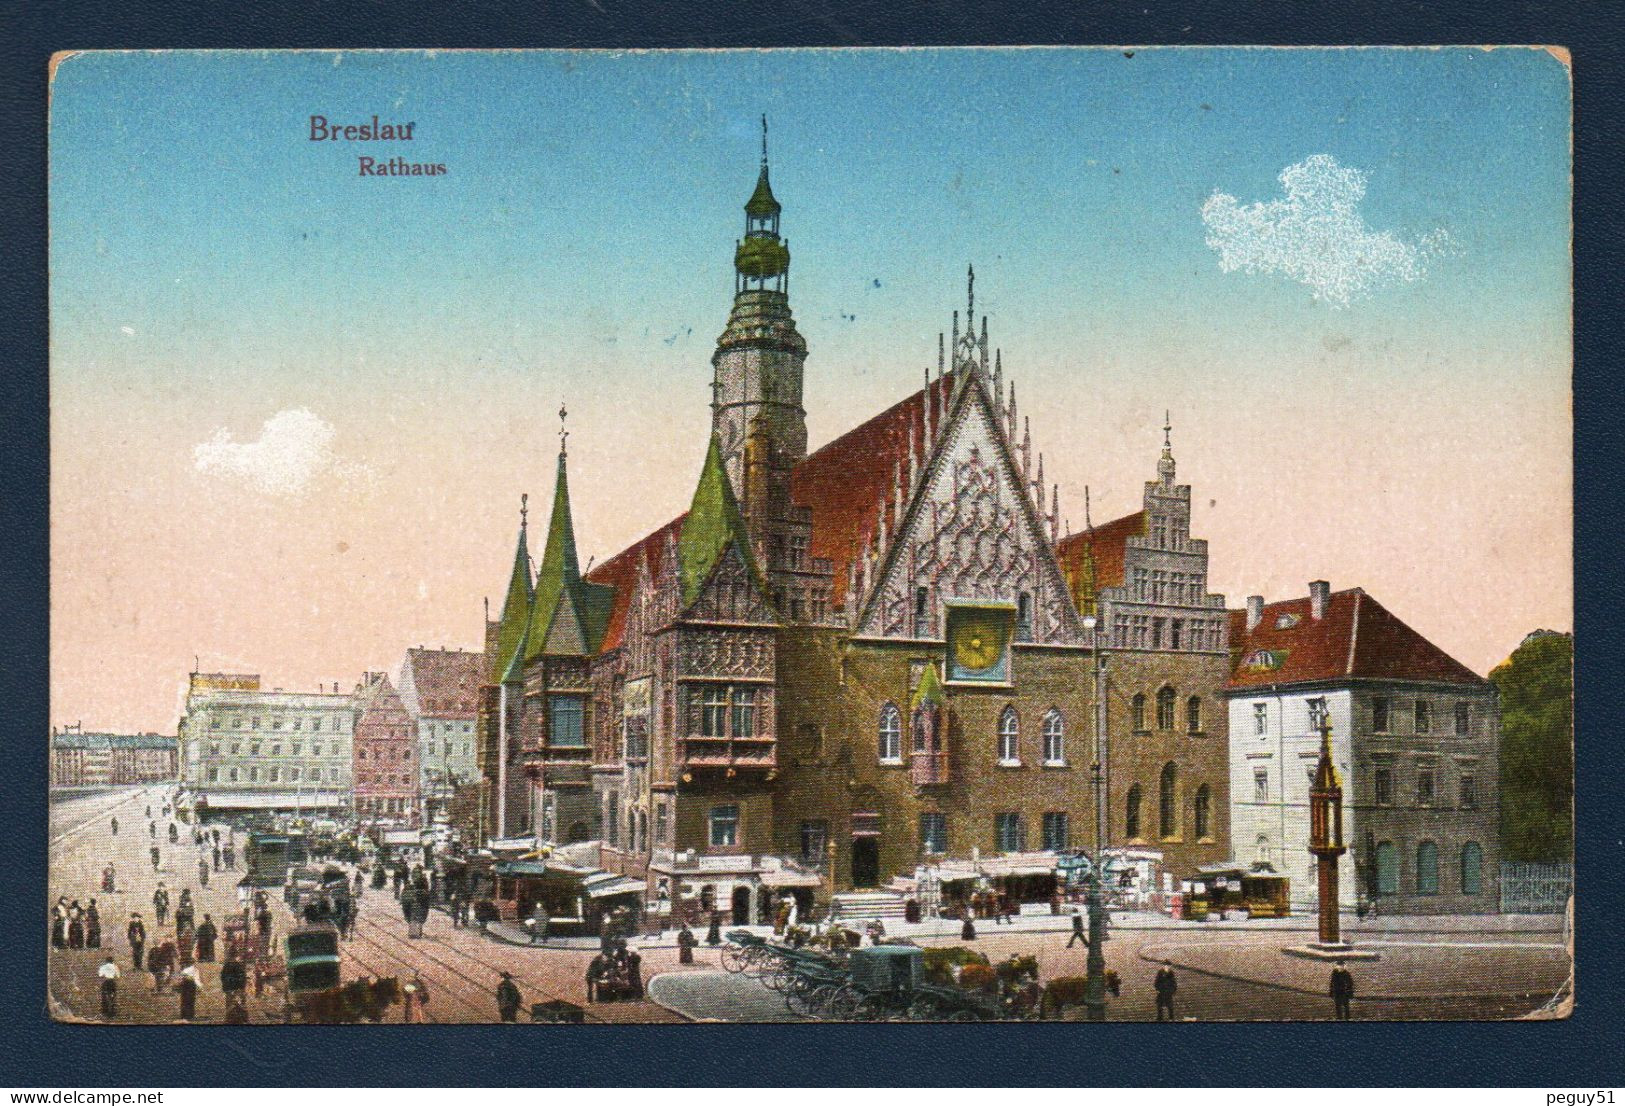 Pologne. Wroclaw (Breslau). Rathaus. Hôtel De Ville, Place Du Marché. Franchise Militaire Et Censure De Metz. 1917 - Polonia